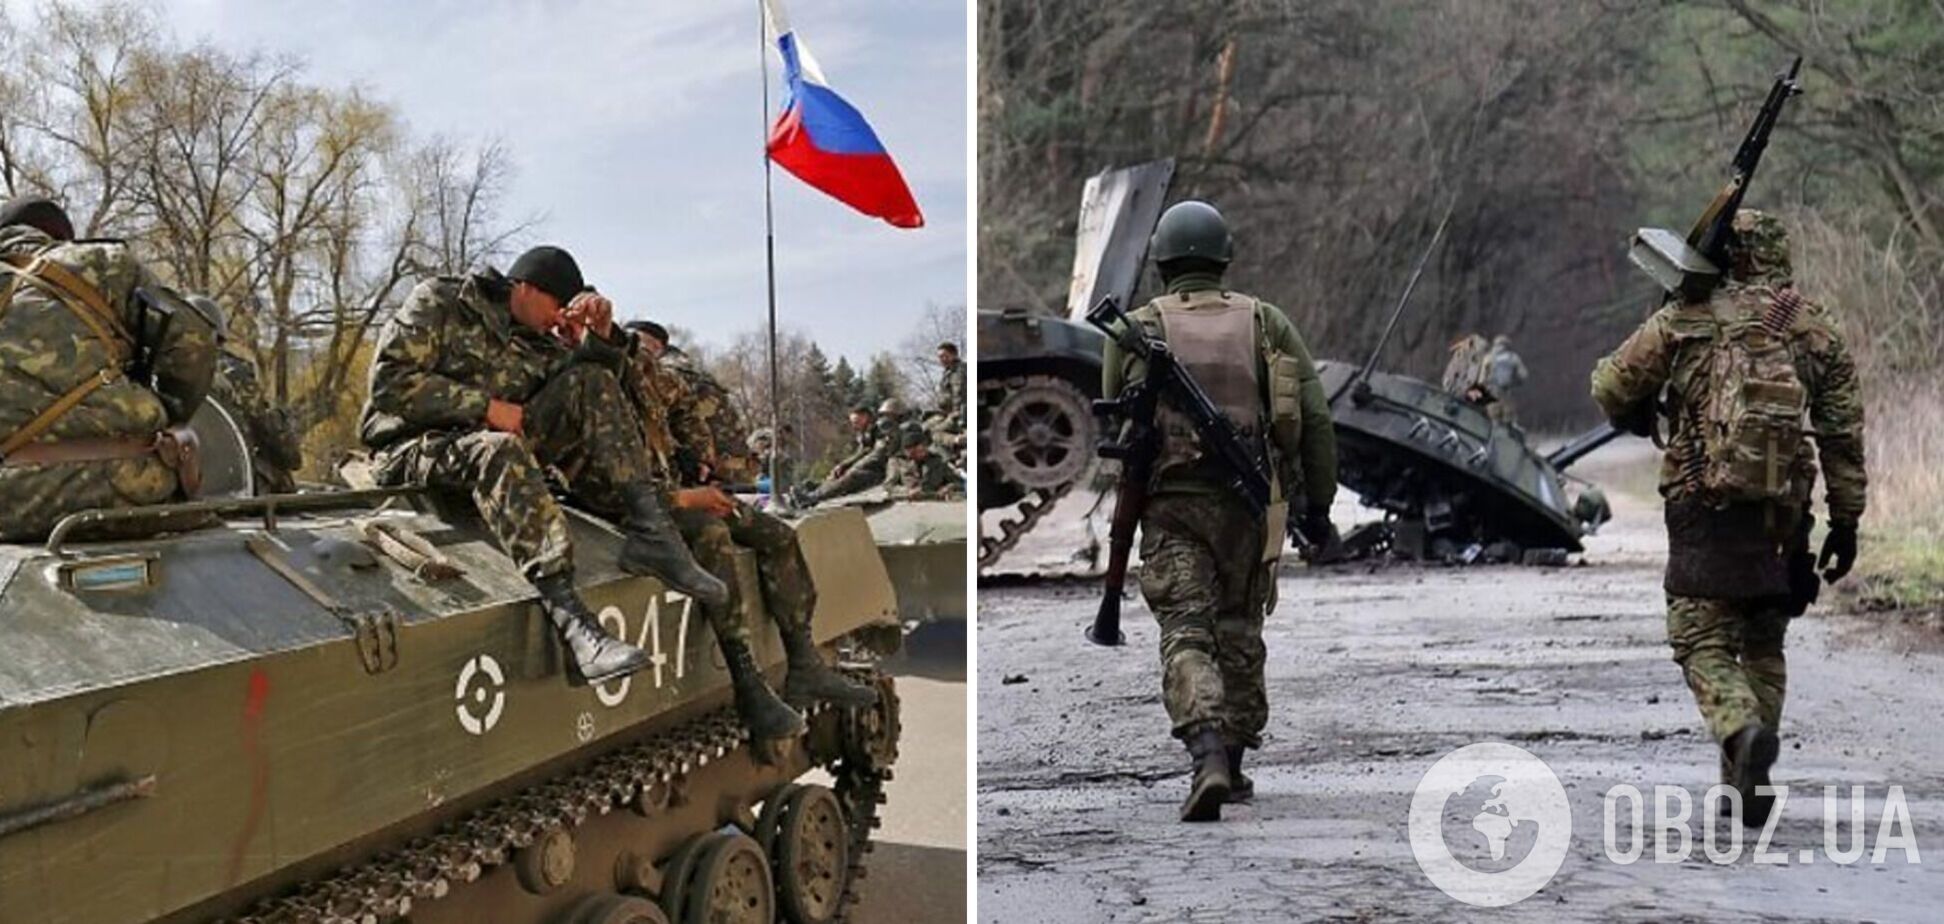 В Соледаре идут тяжелые бои, но ВСУ контролируют ситуацию, – Кириленко